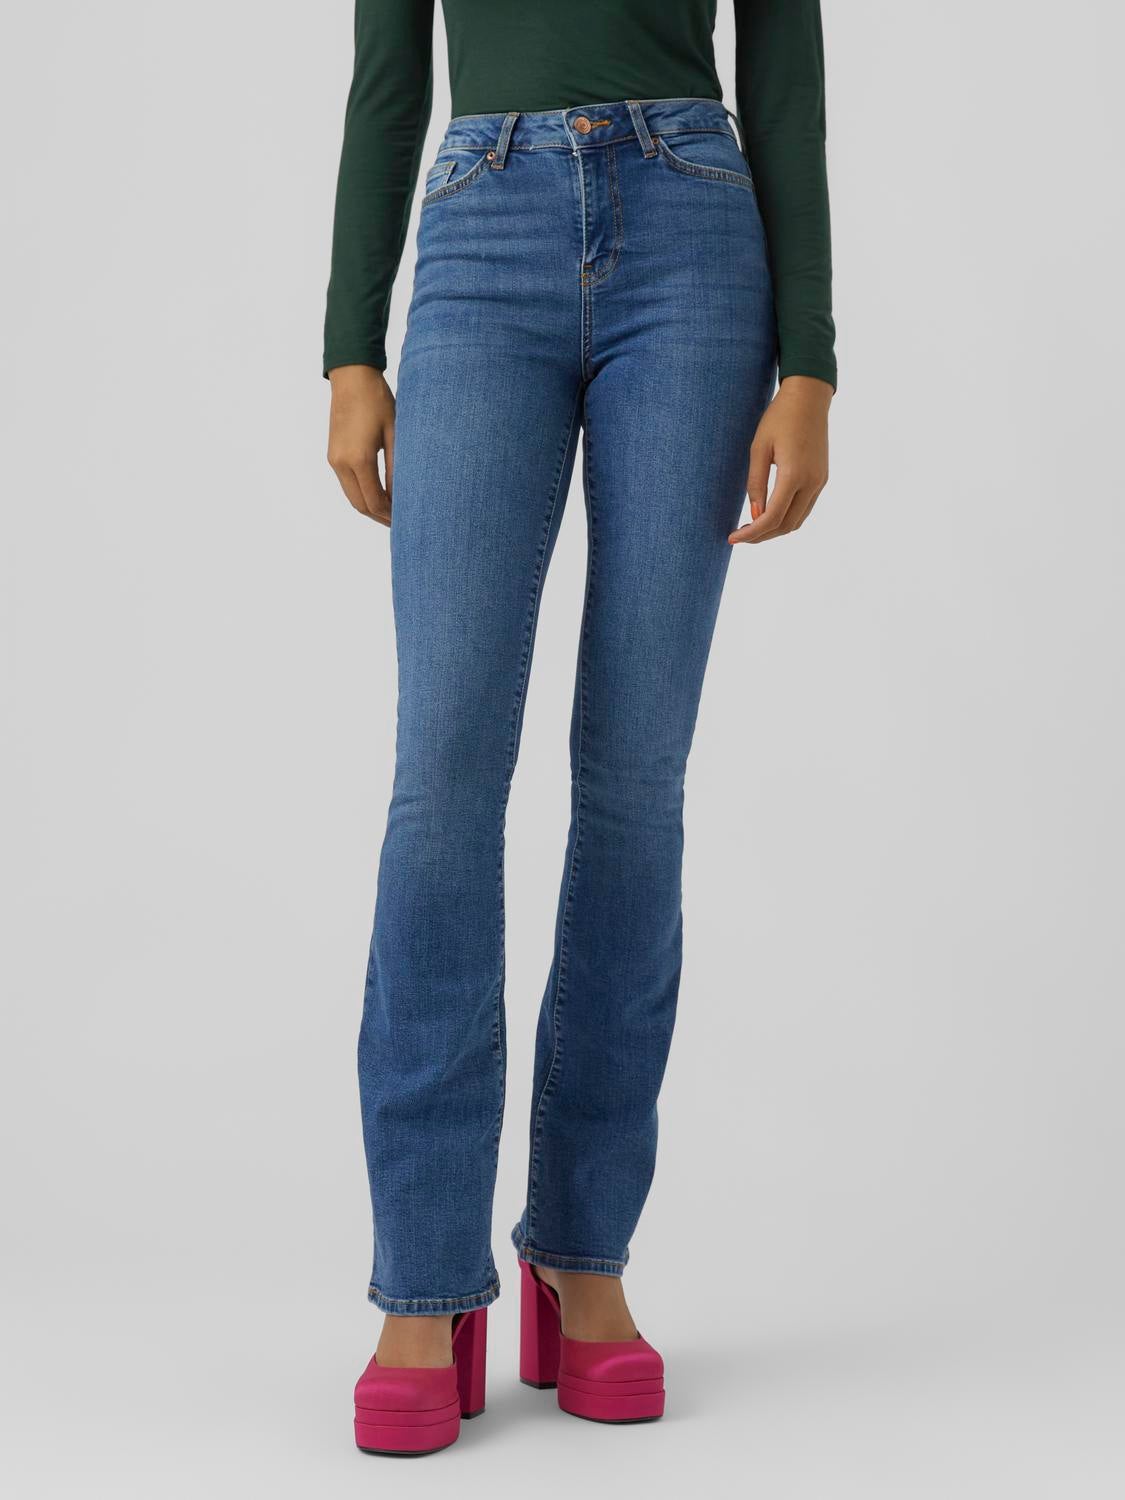 Kleding Dames Spijkerbroeken en Jeans Vero Moda ≥ Blauwe jeans maat 38 — Spijkerbroeken en Jeans 